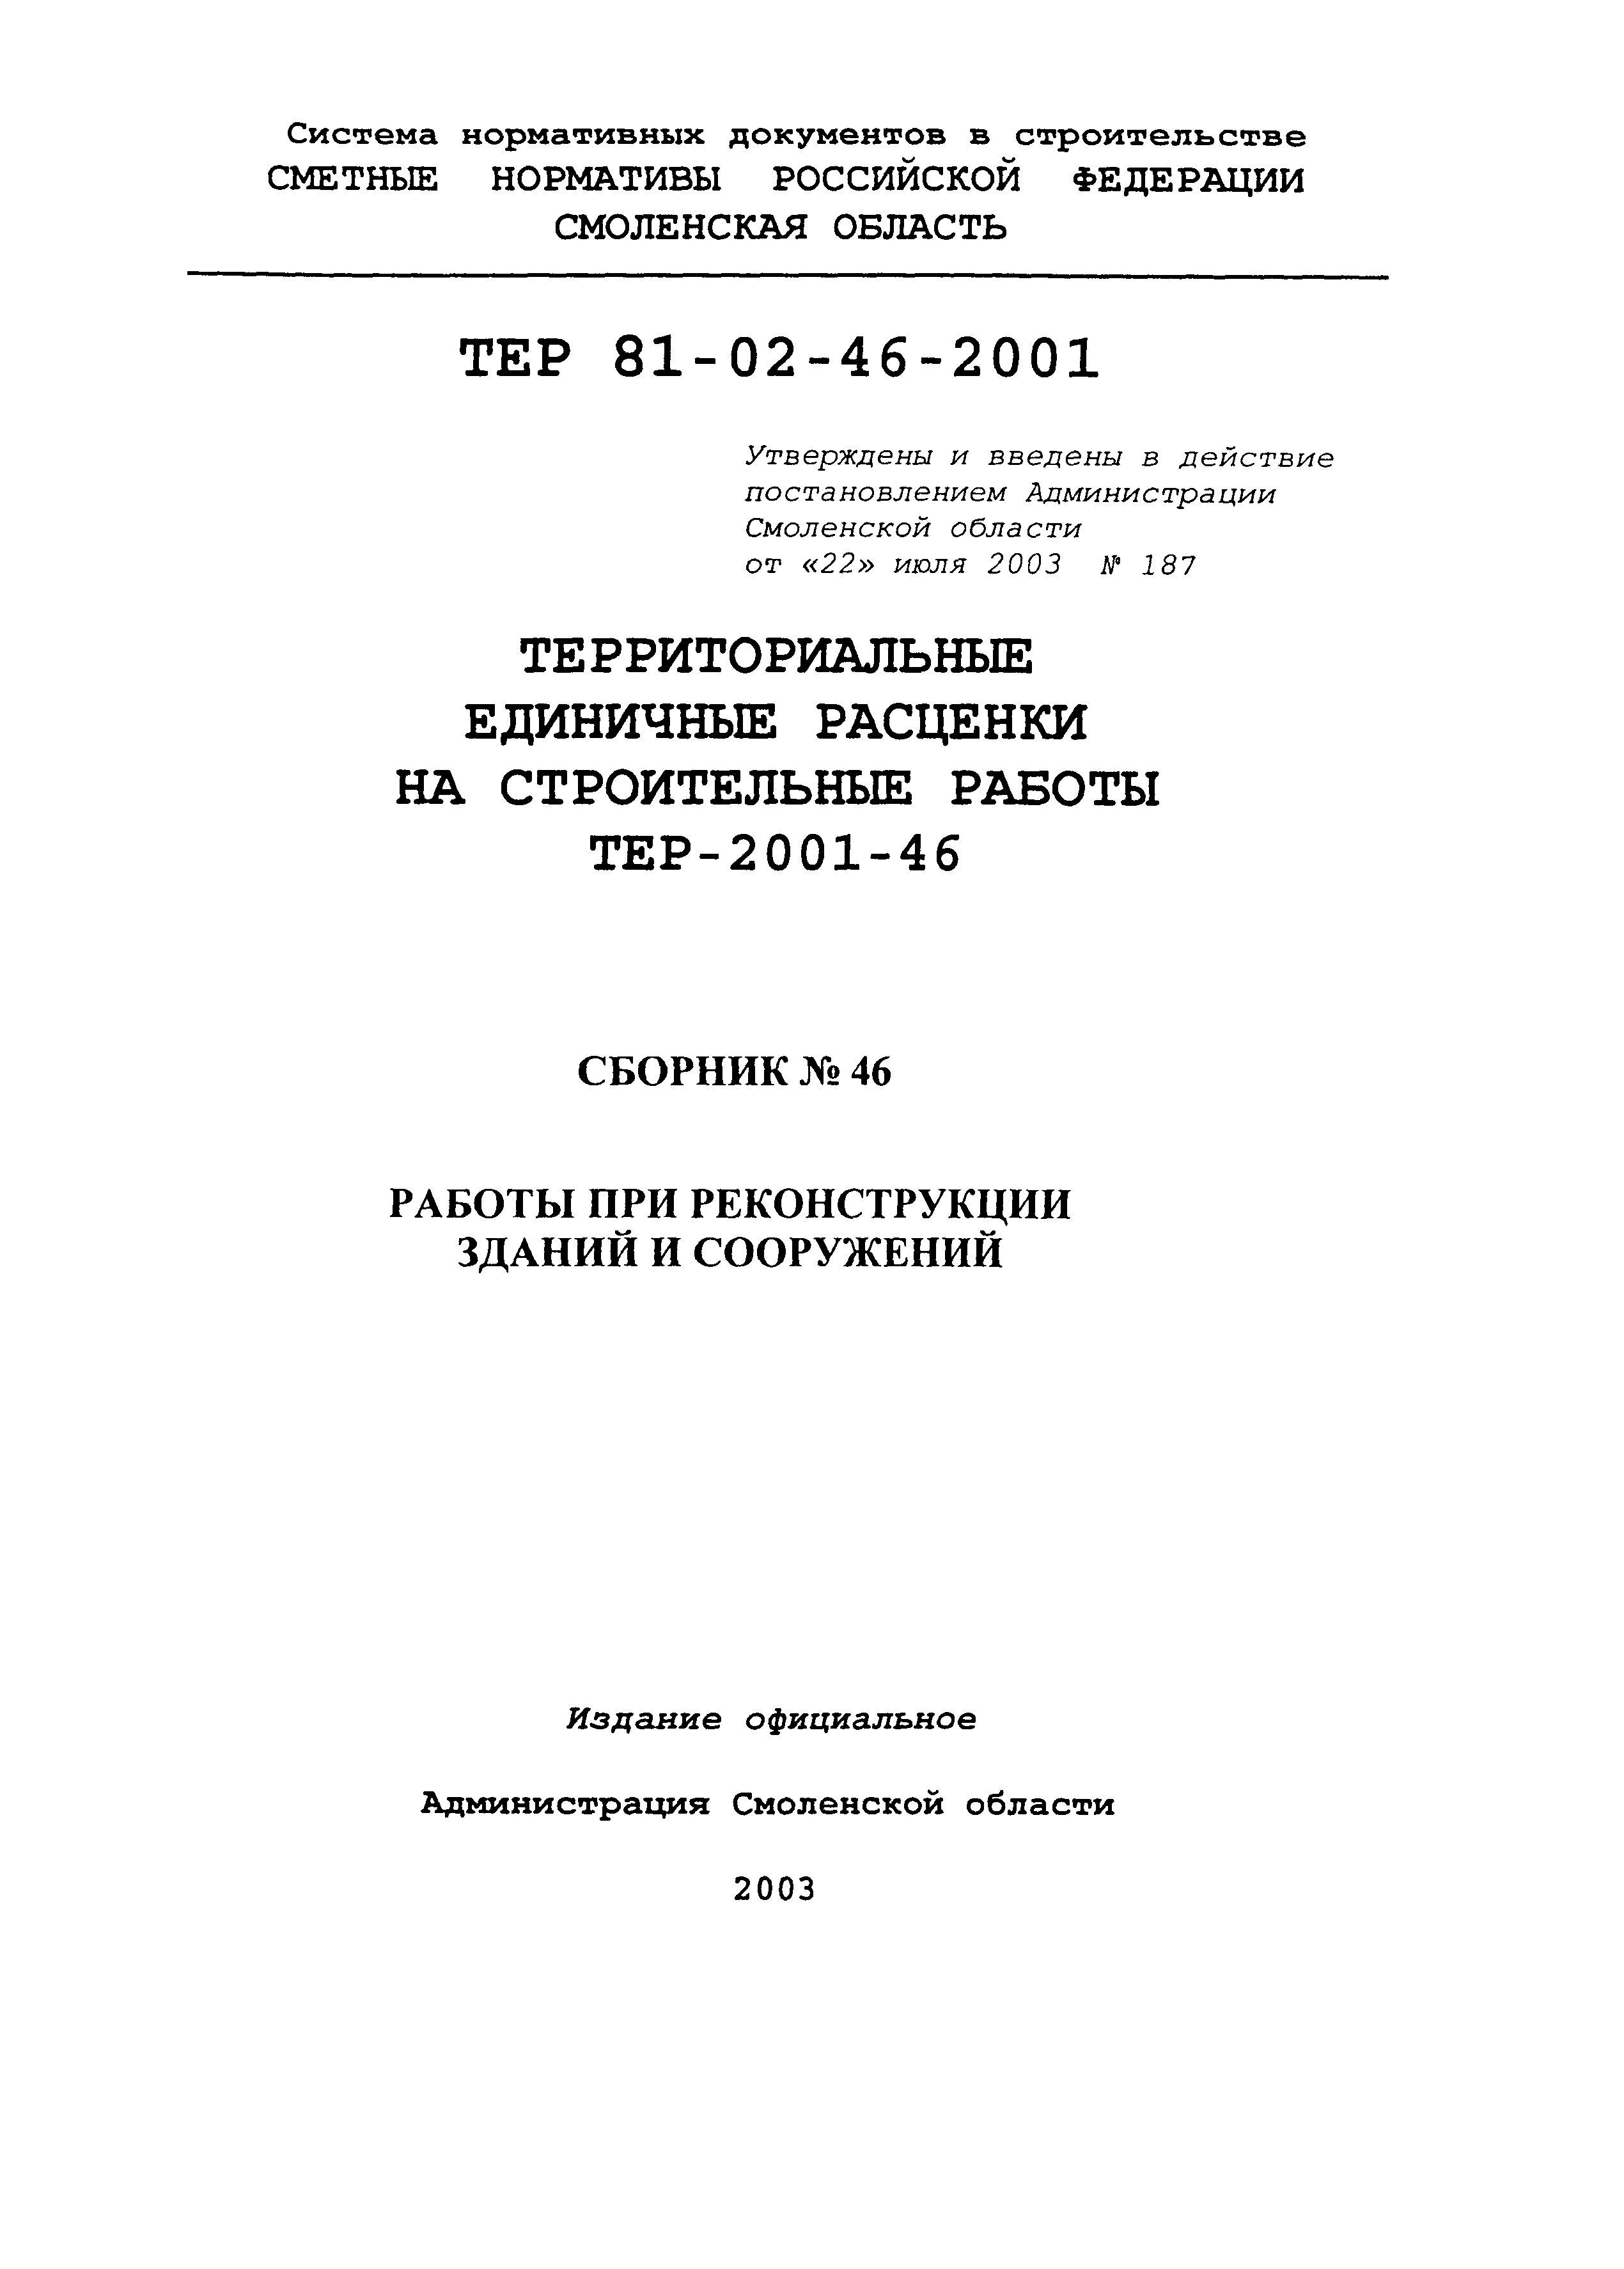 ТЕР Смоленской обл. 2001-46